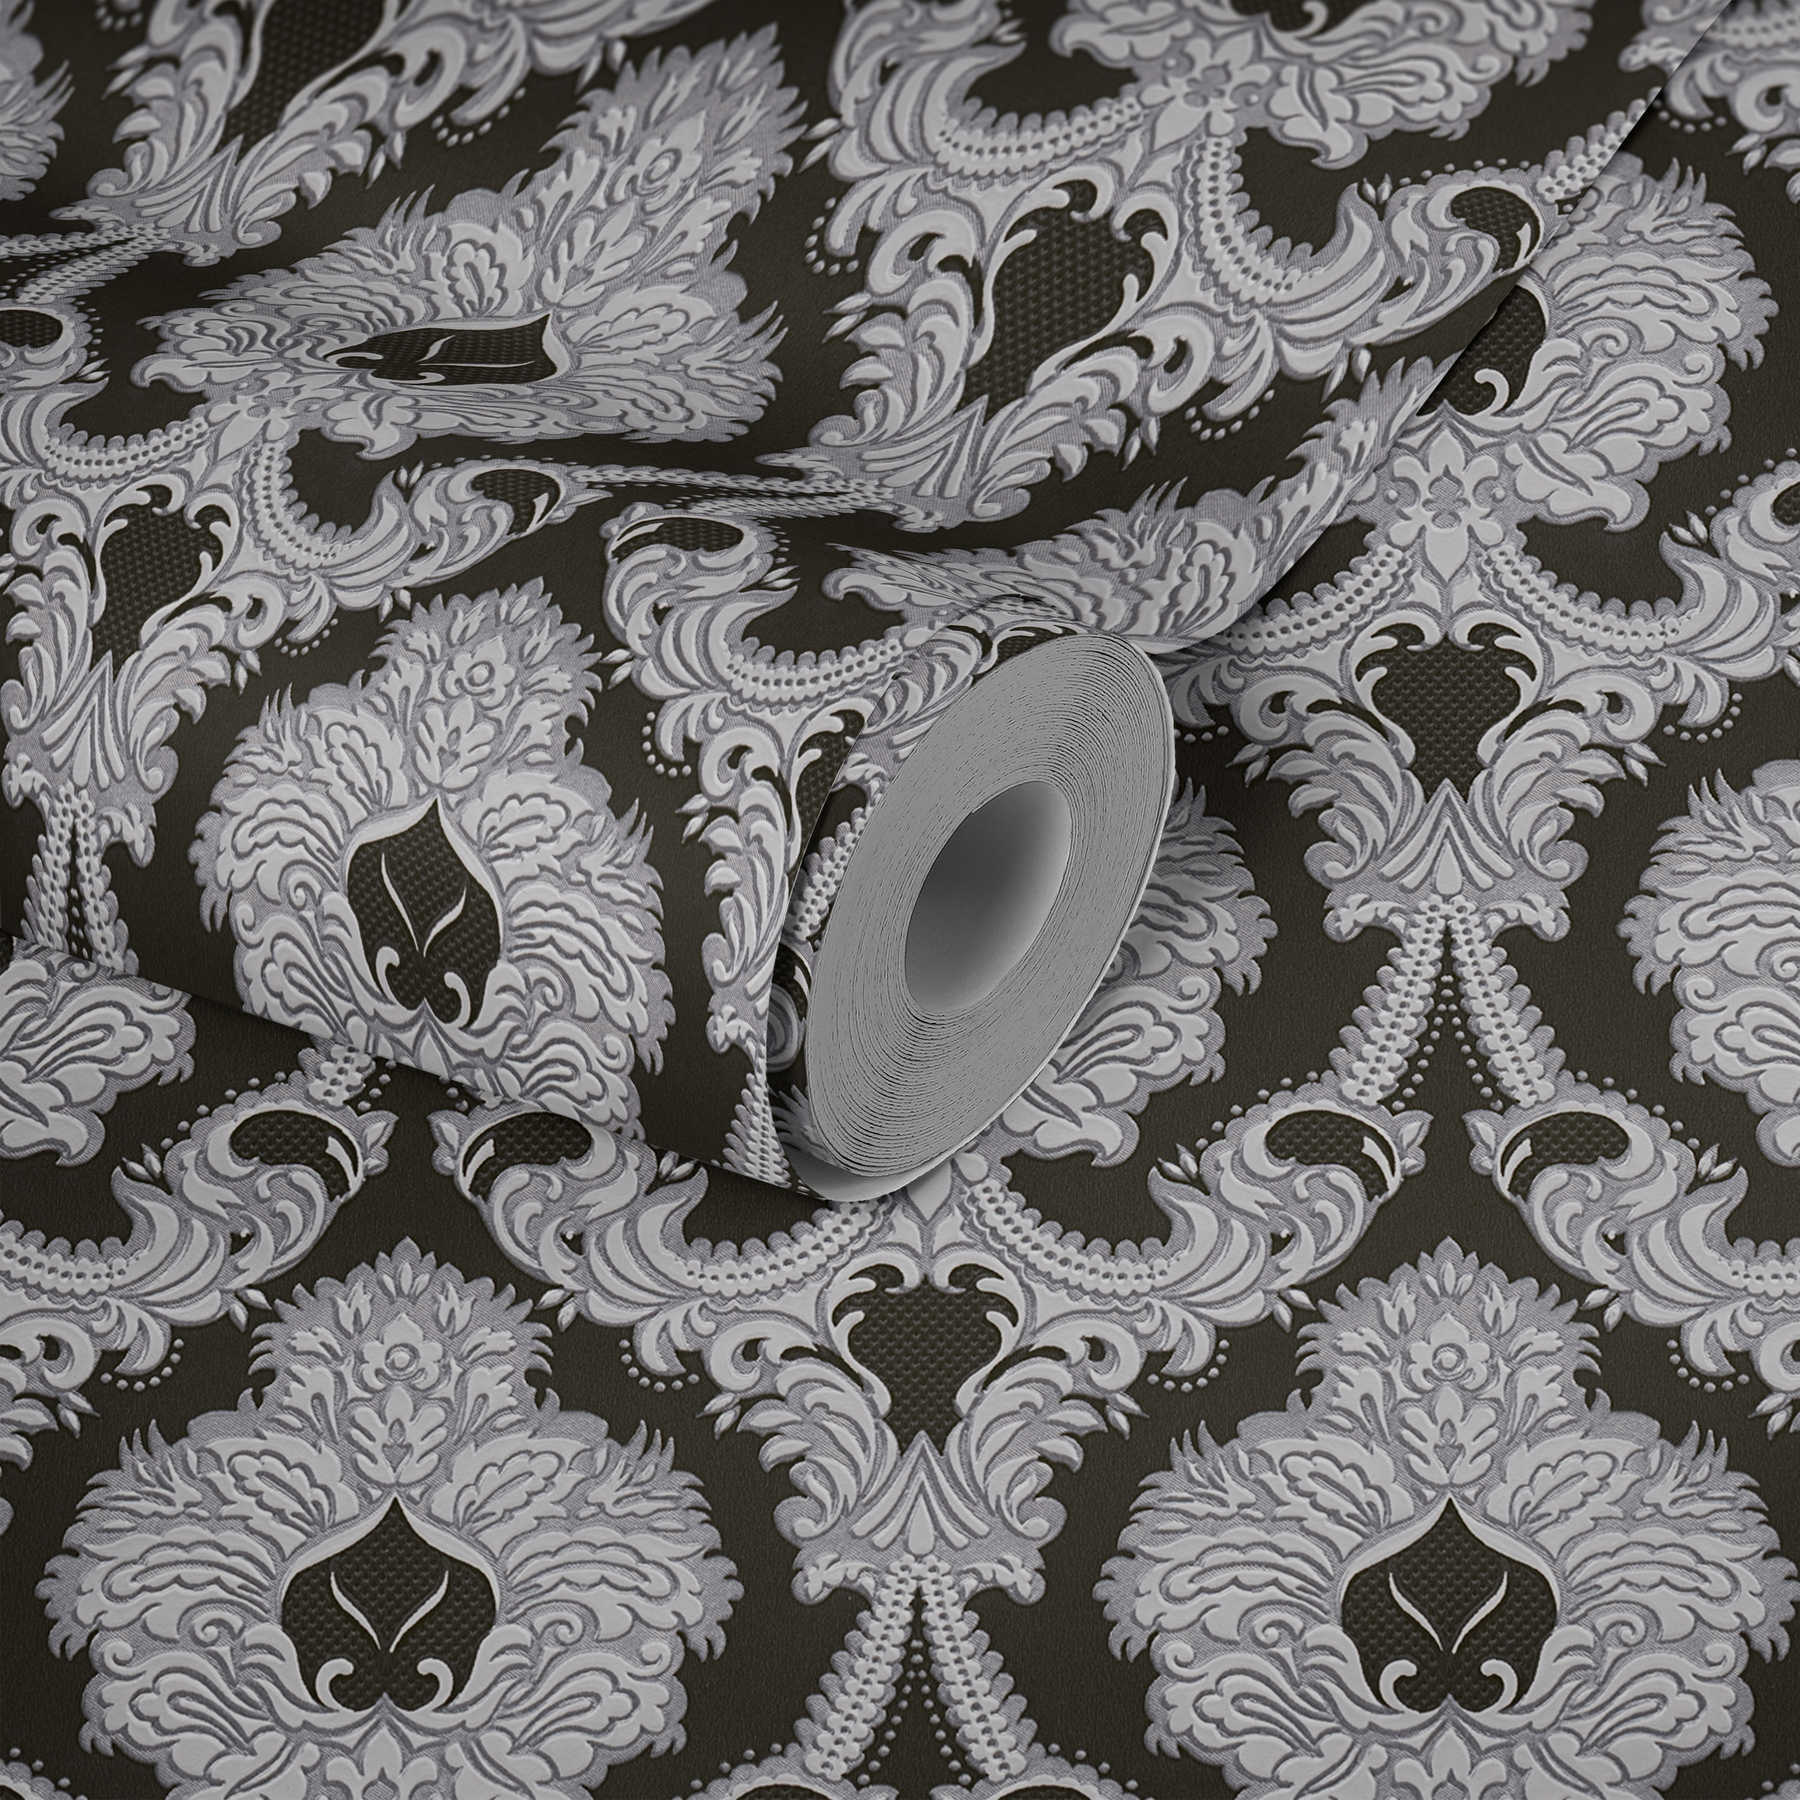             Opulente Ornament-Tapete, silberne Akzente – Silber, Schwarz, Weiß
        